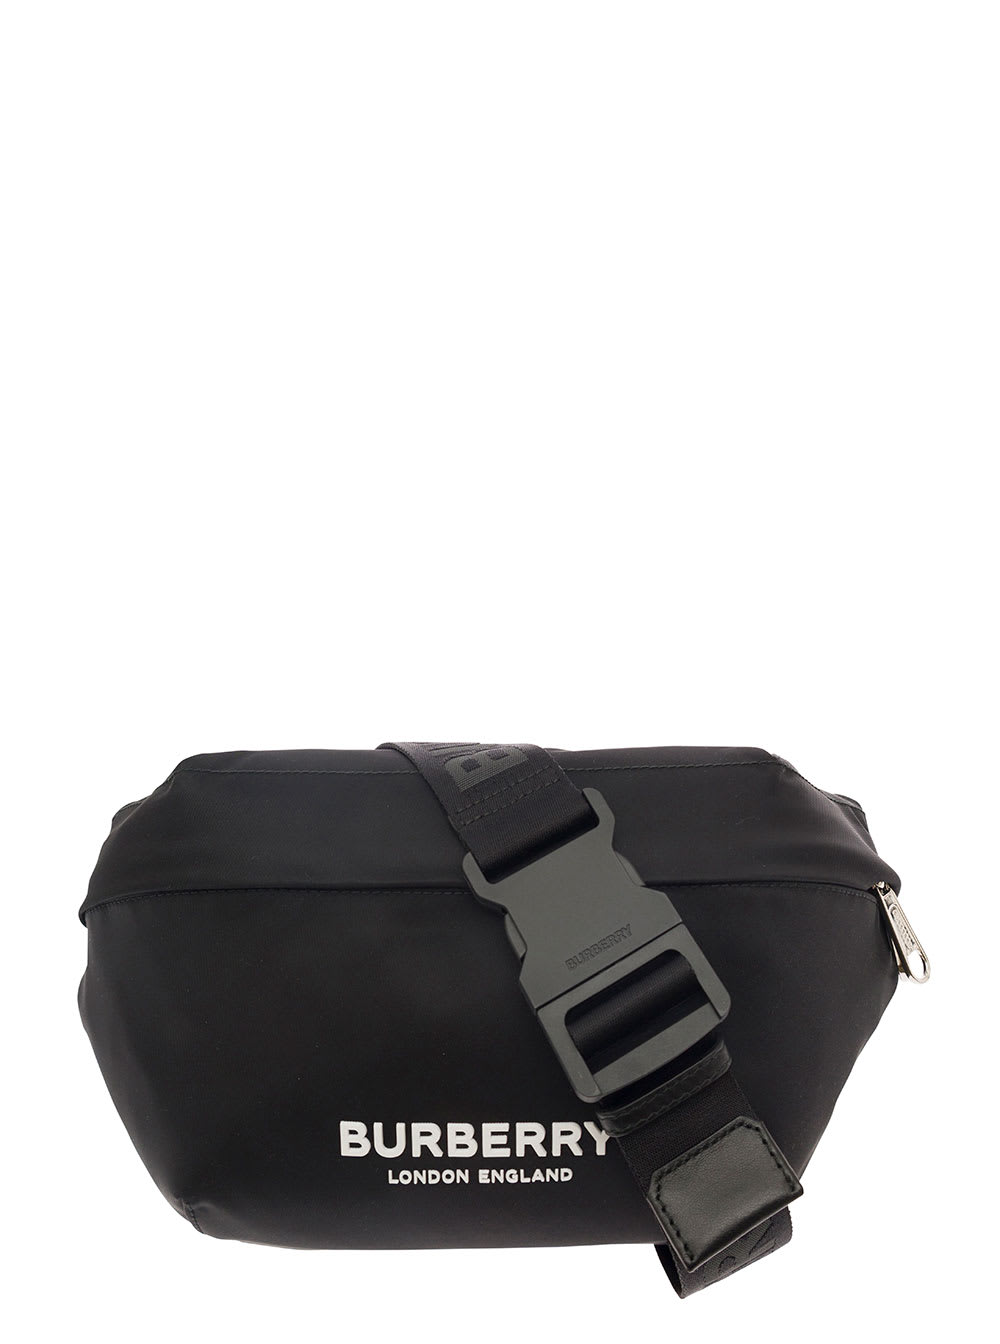 Burberry Logo Print Nylon Sonny Bum Bag Black/White